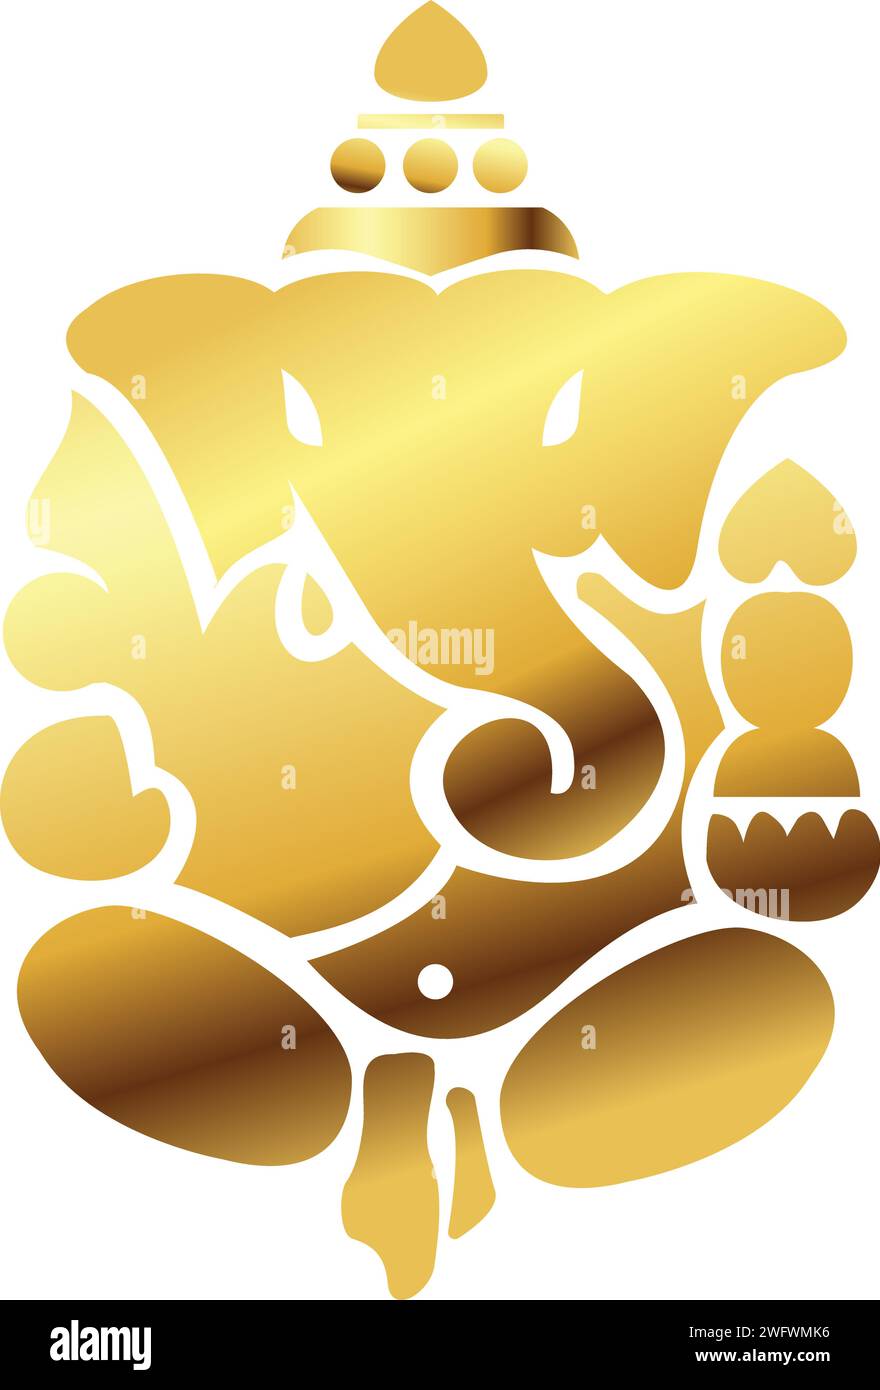 Lord ganesha illustration vectorielle, Ganesh chaturthi, Ganesh icône en or, Golden Ganesh ji, carte de voeux Seigneur Ganpati, festivals et décoratifs Illustration de Vecteur